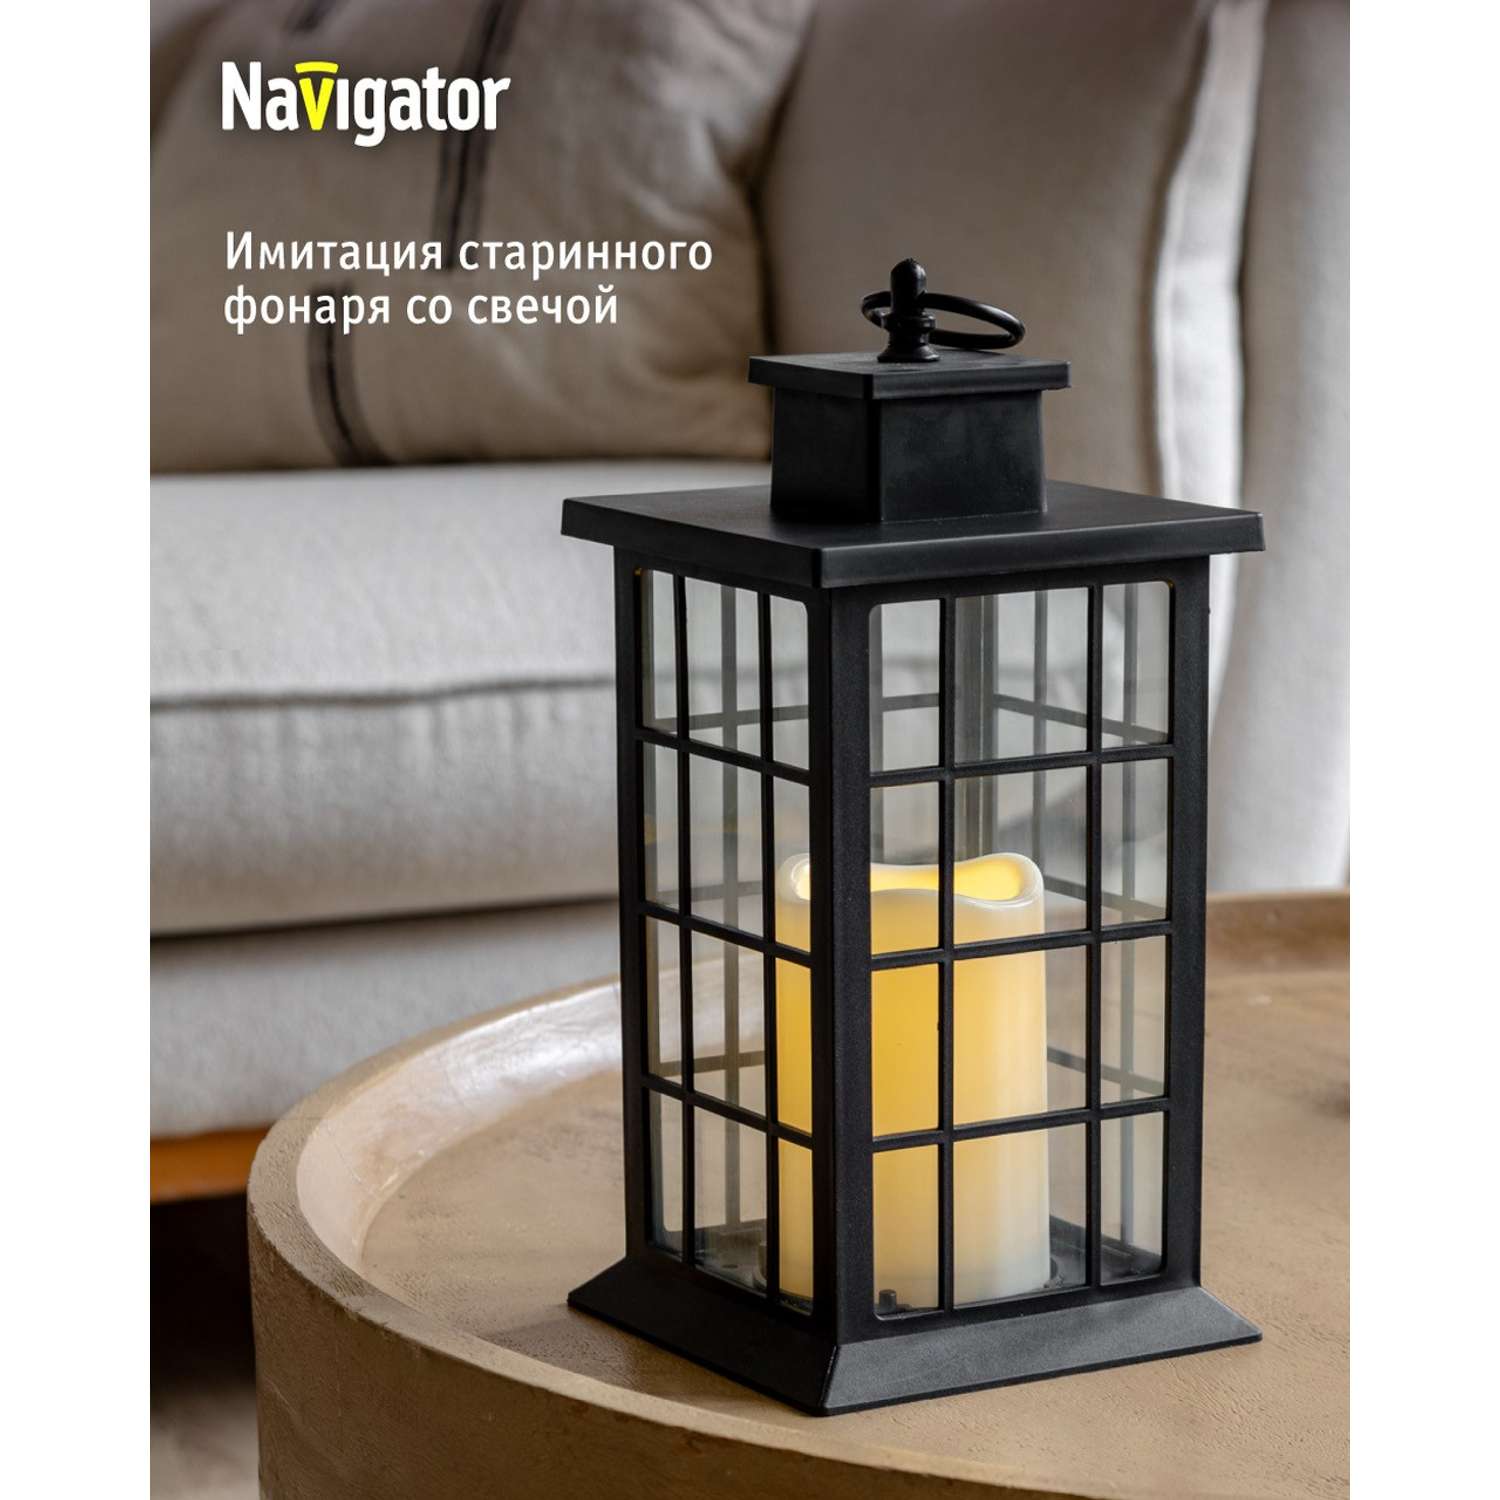 Декоративный светильник-ночник NaVigator светодиодный для детской комнаты узор черная решетка - фото 1